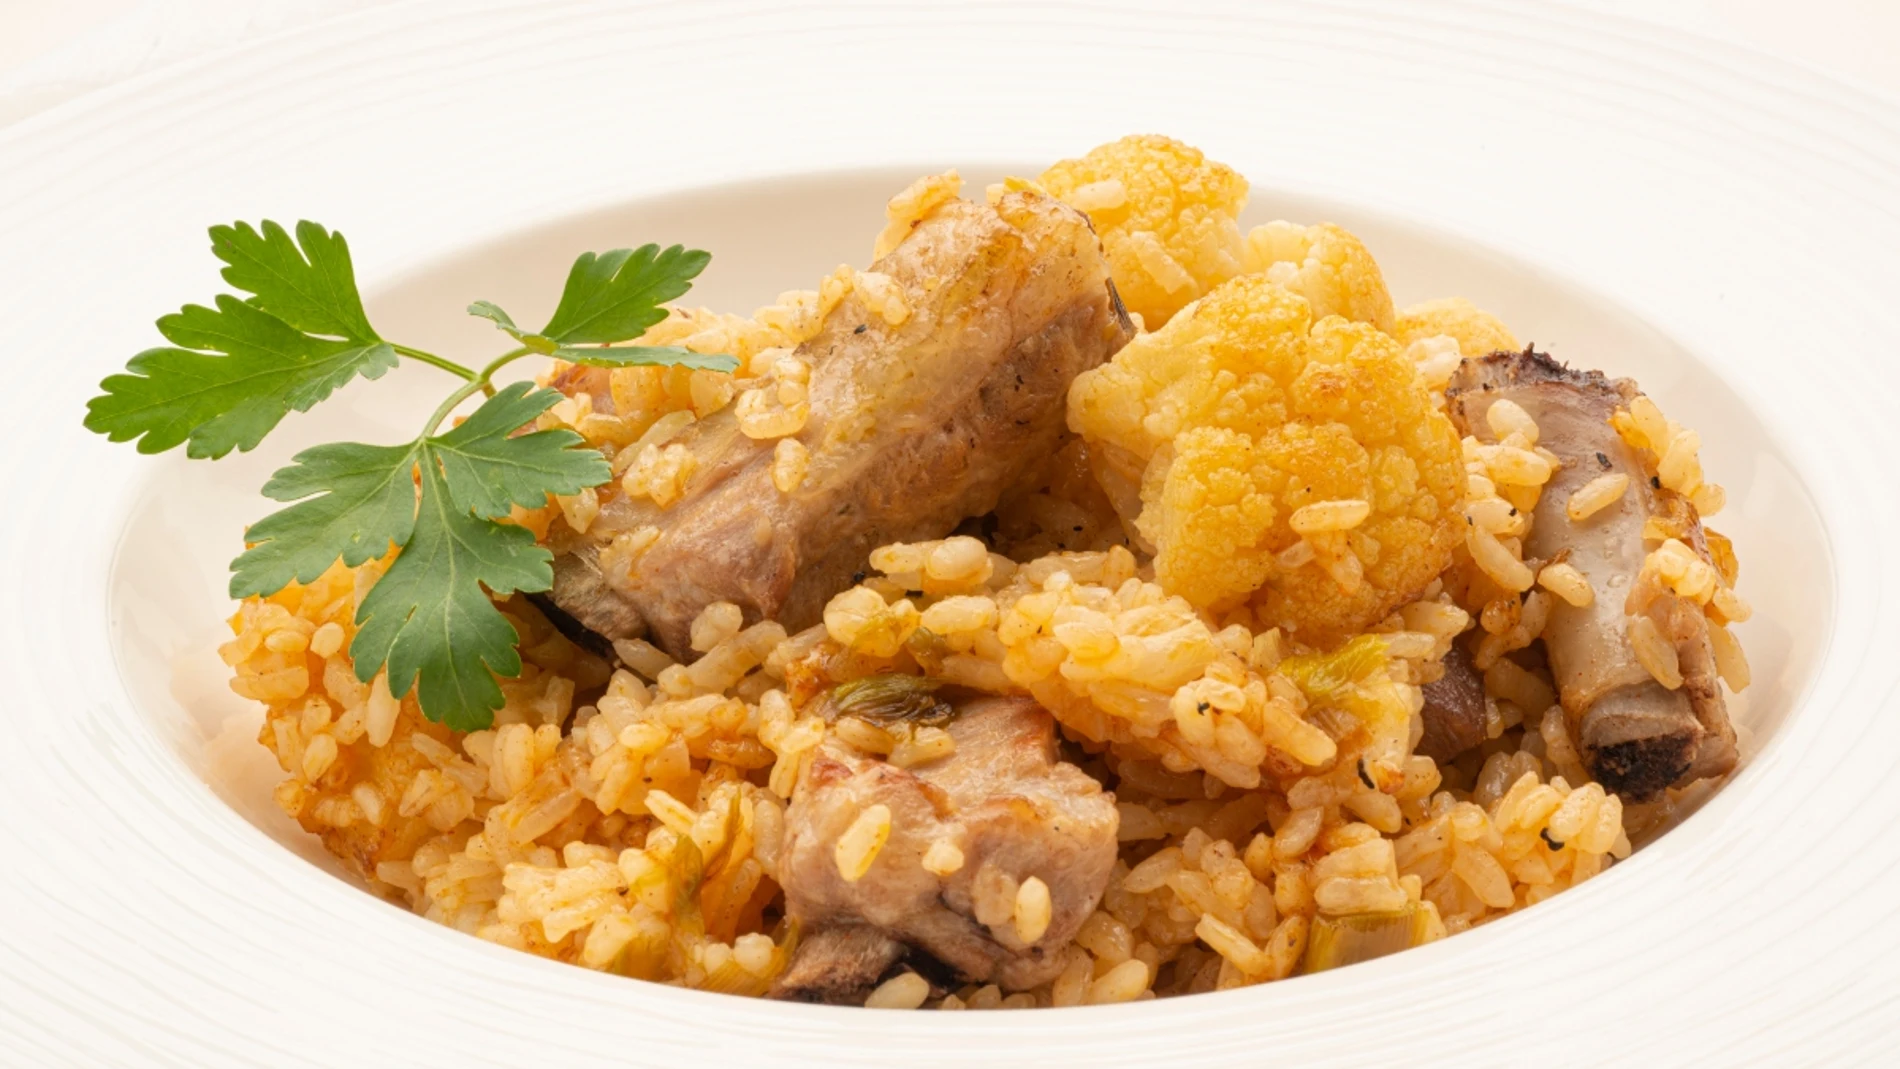 La receta que Arguiñano va a cocinar en casa para toda su familia: arroz con costilla de cerdo y coliflor